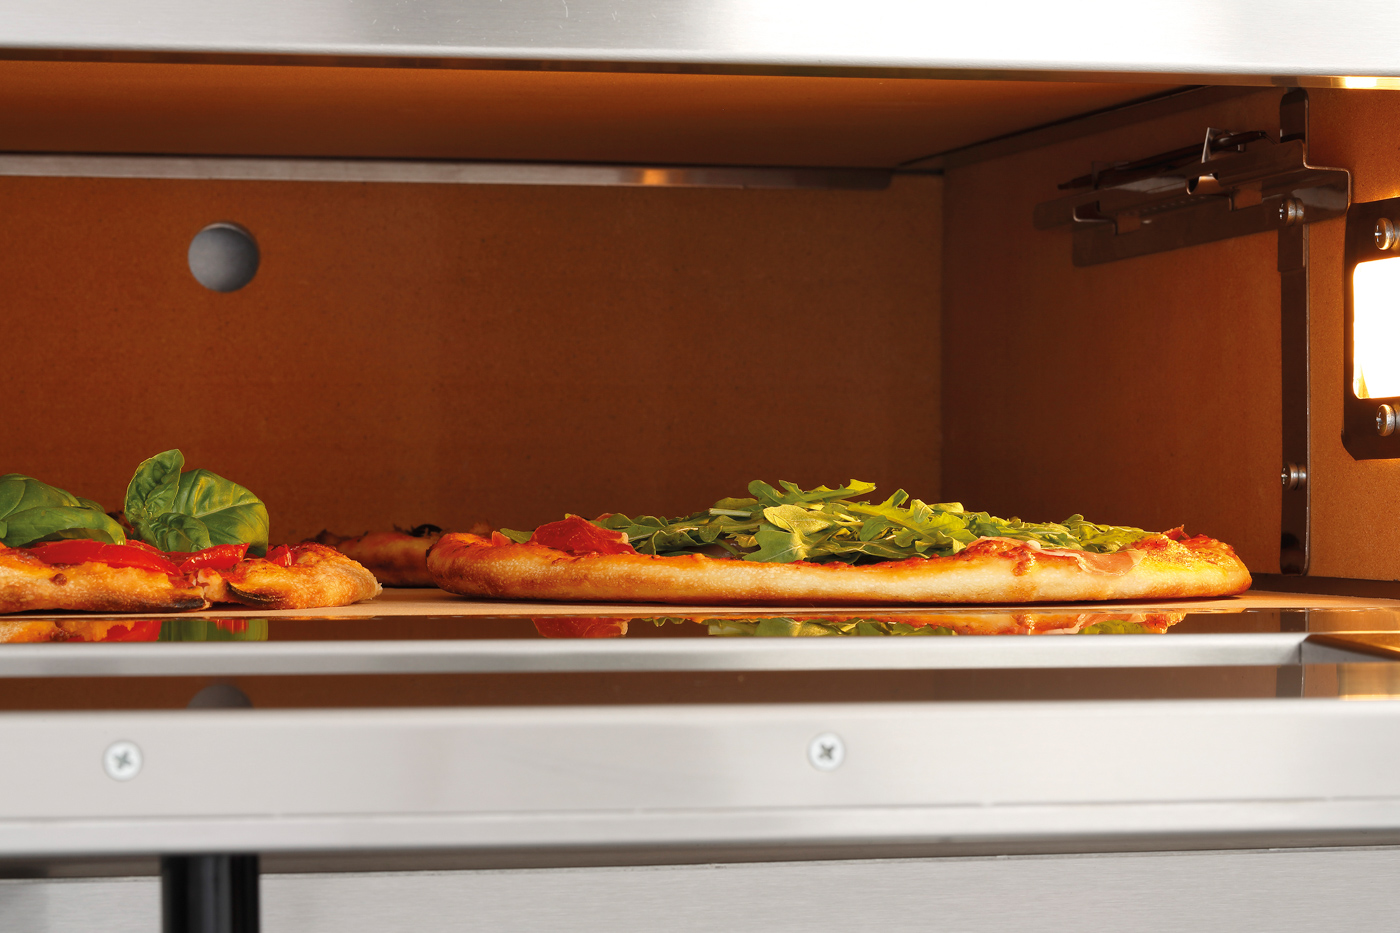 Bartscher Pizzaofen NT 622VS | Spannung: 400 V |Maße: 93 x 83,5 x 73,0 cm. Gewicht: 151,6 kg